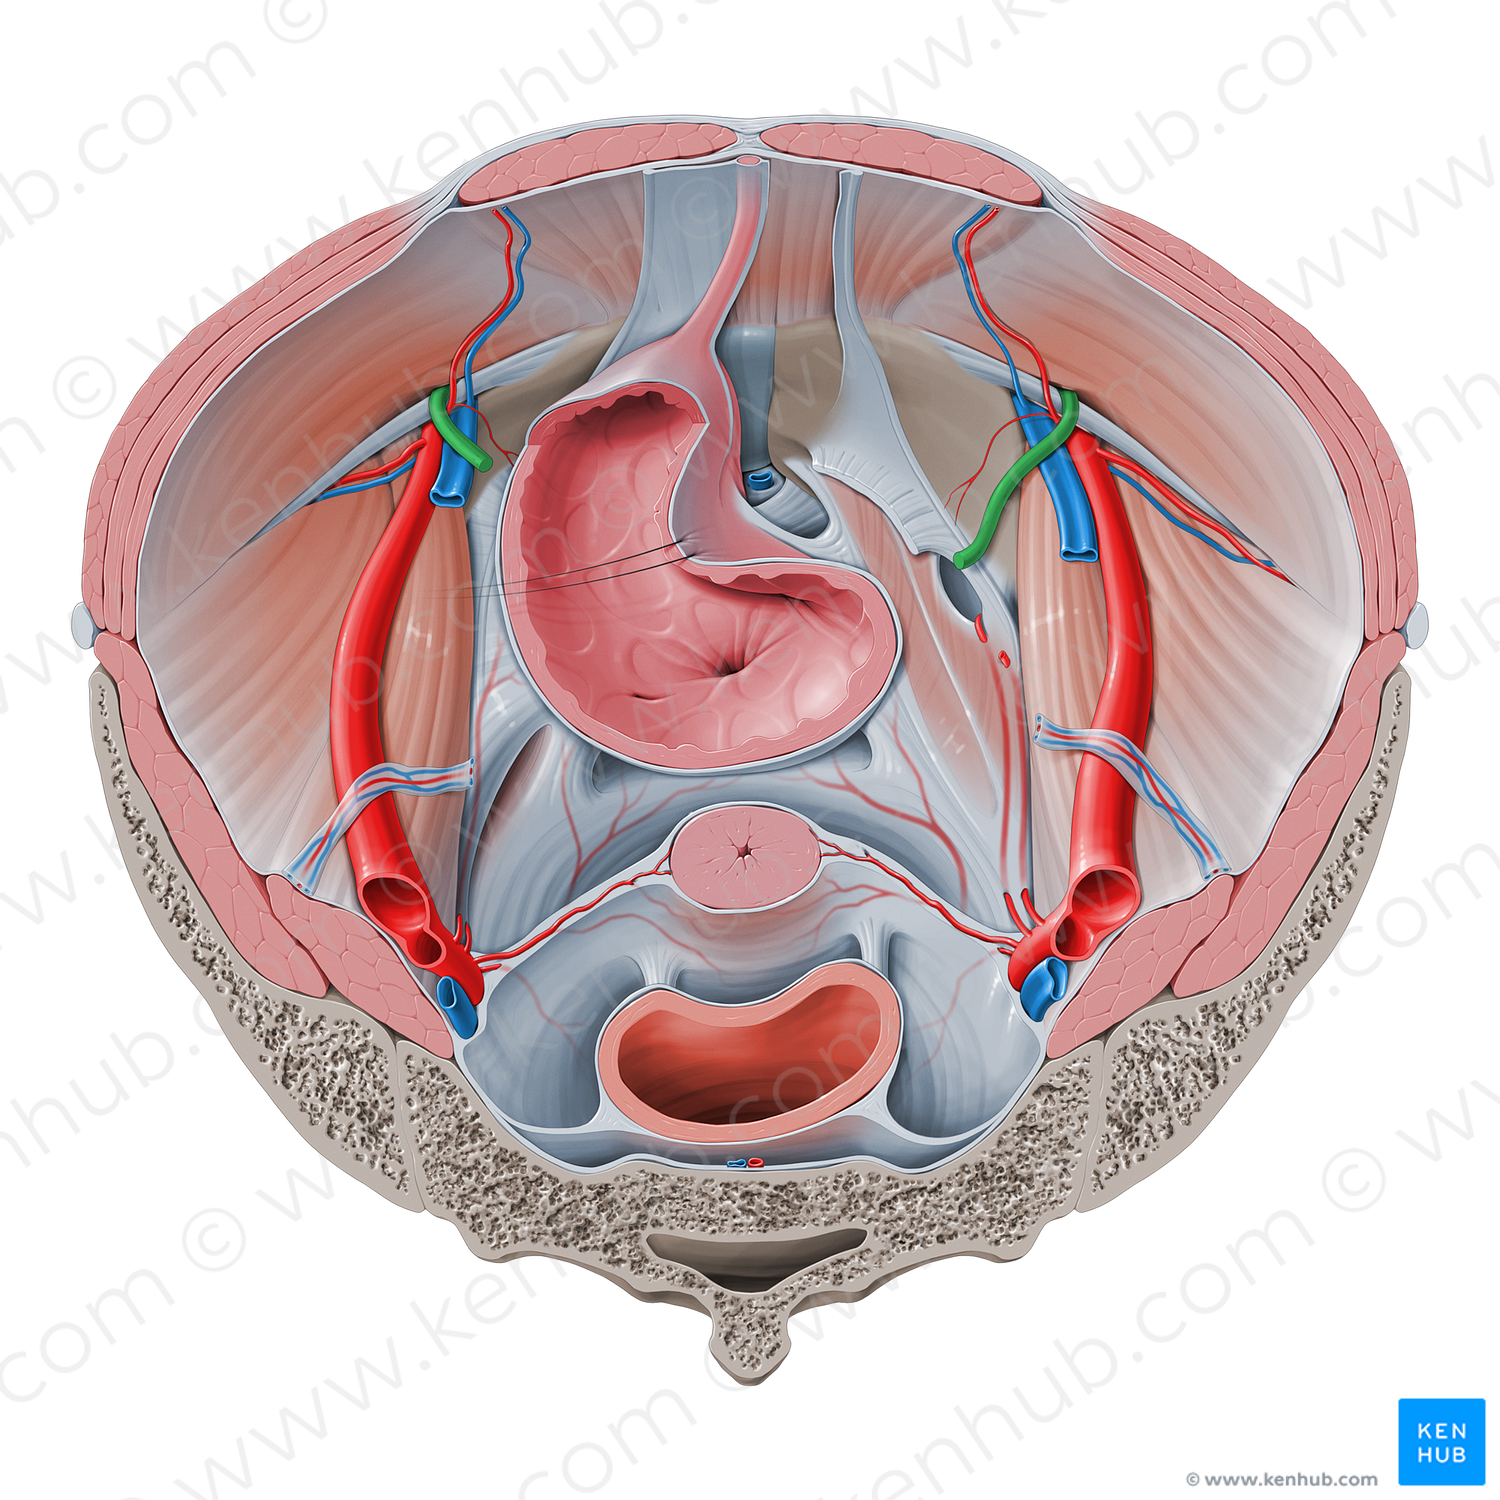 Round ligament of uterus (#4645)